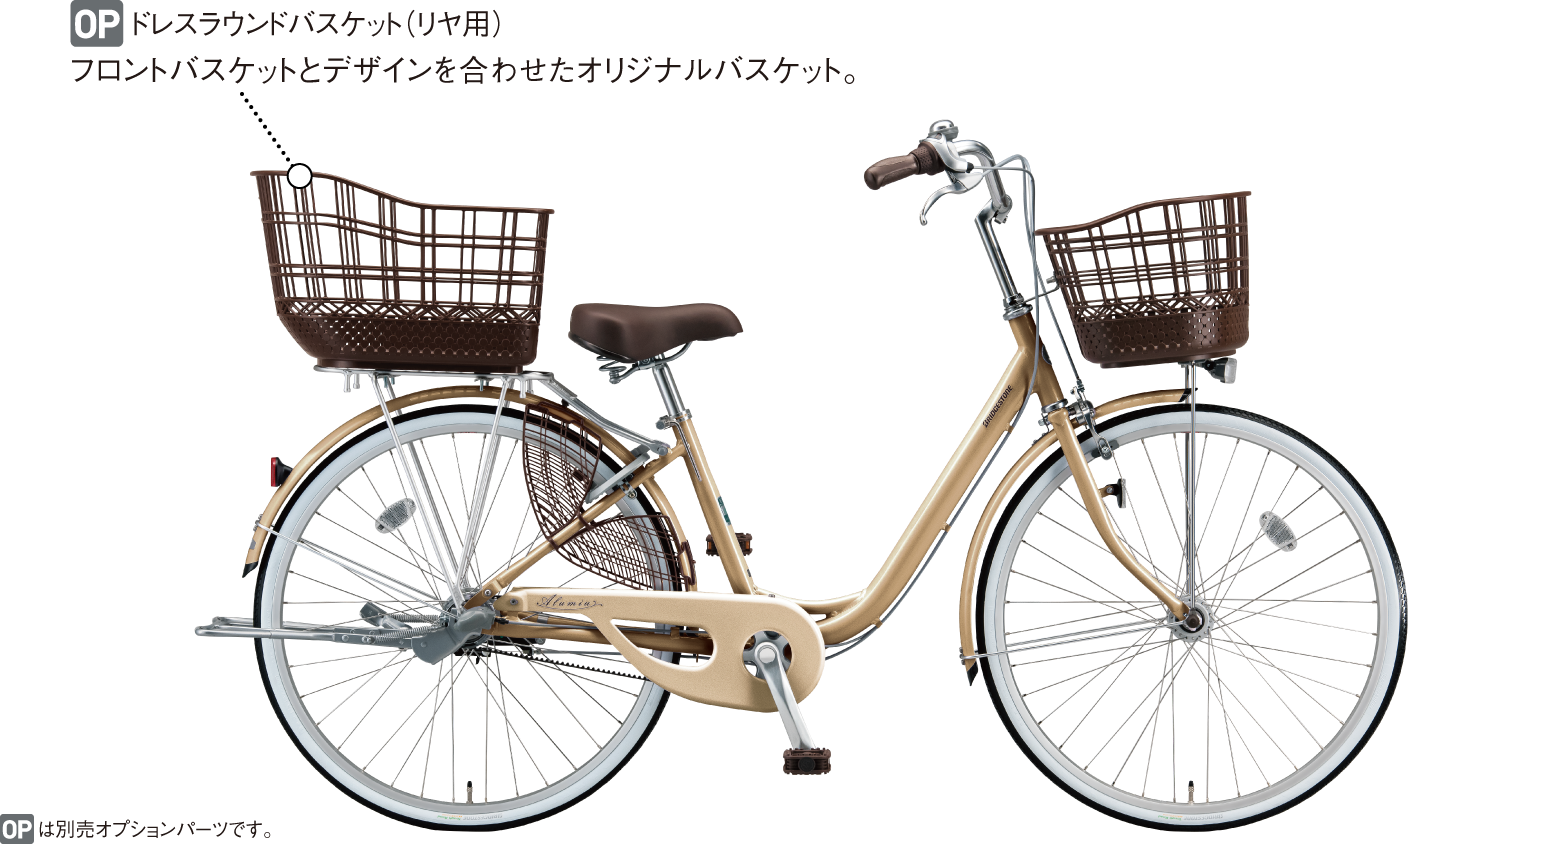 アルミーユ 通学 普段使い自転車 買い物向け自転車 自転車 ブリヂストンサイクル株式会社